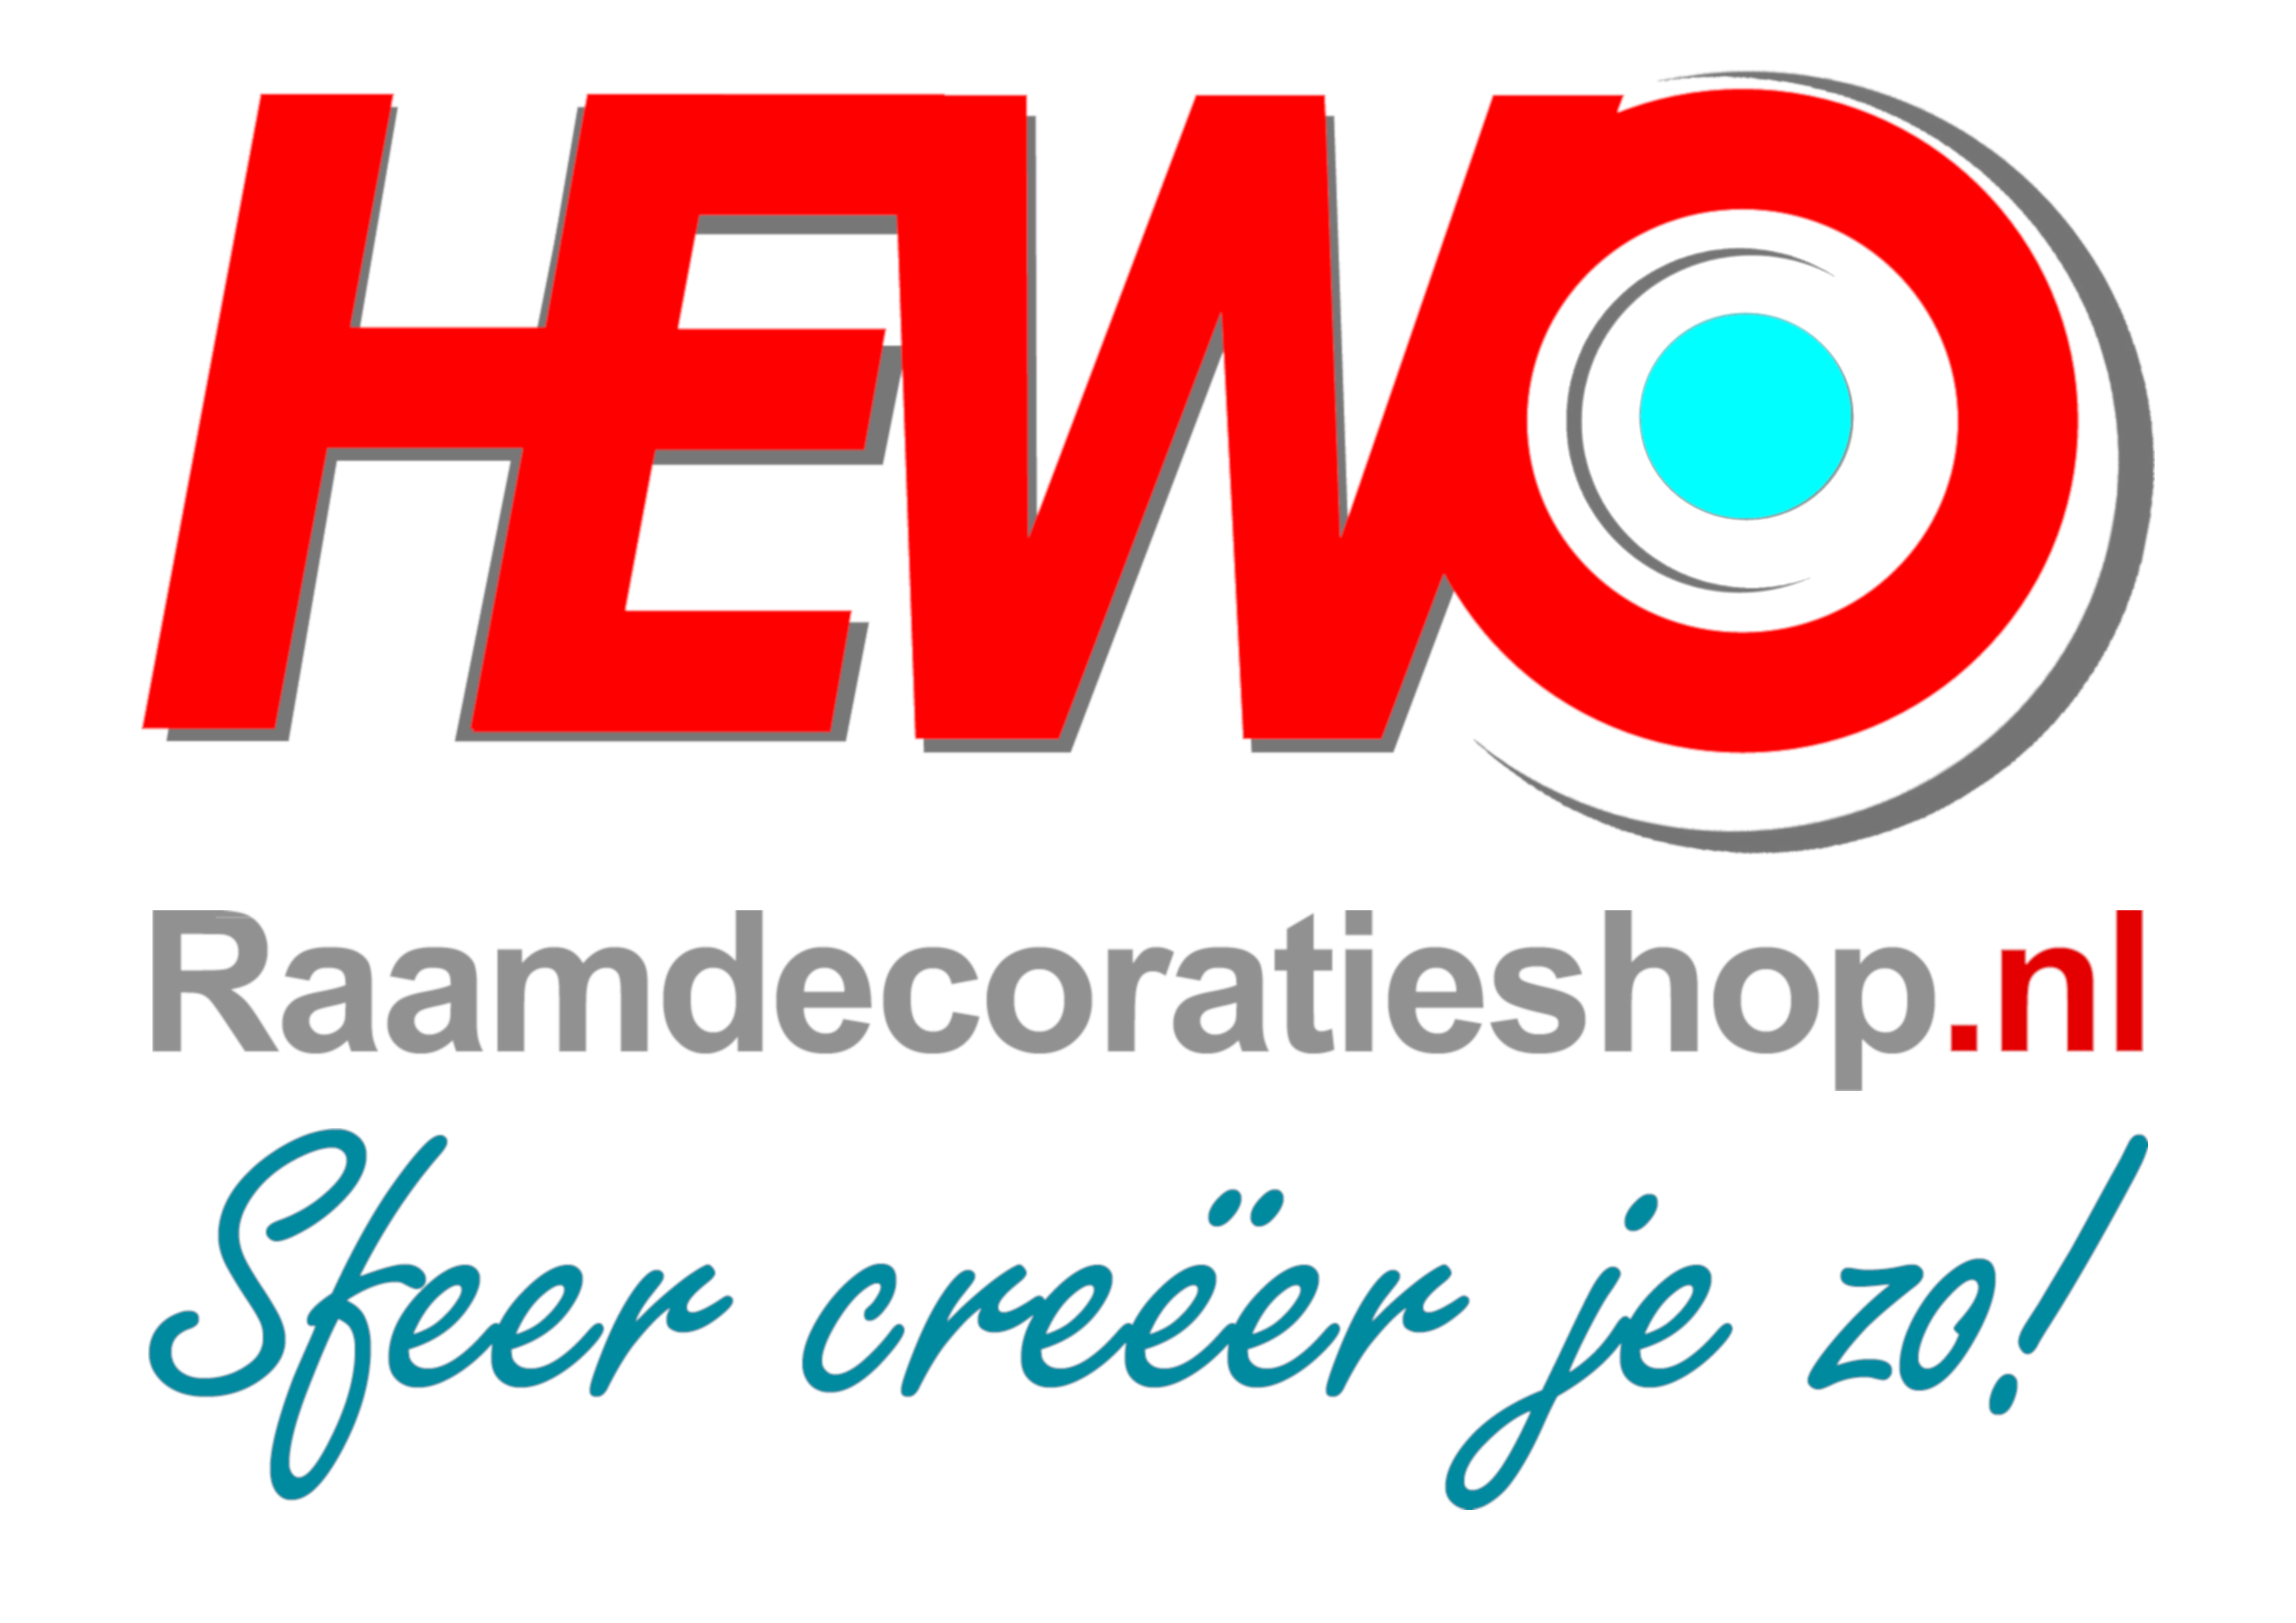 HEWO_Raamdecoratieshop_nl_en_kernboodschap.jpg